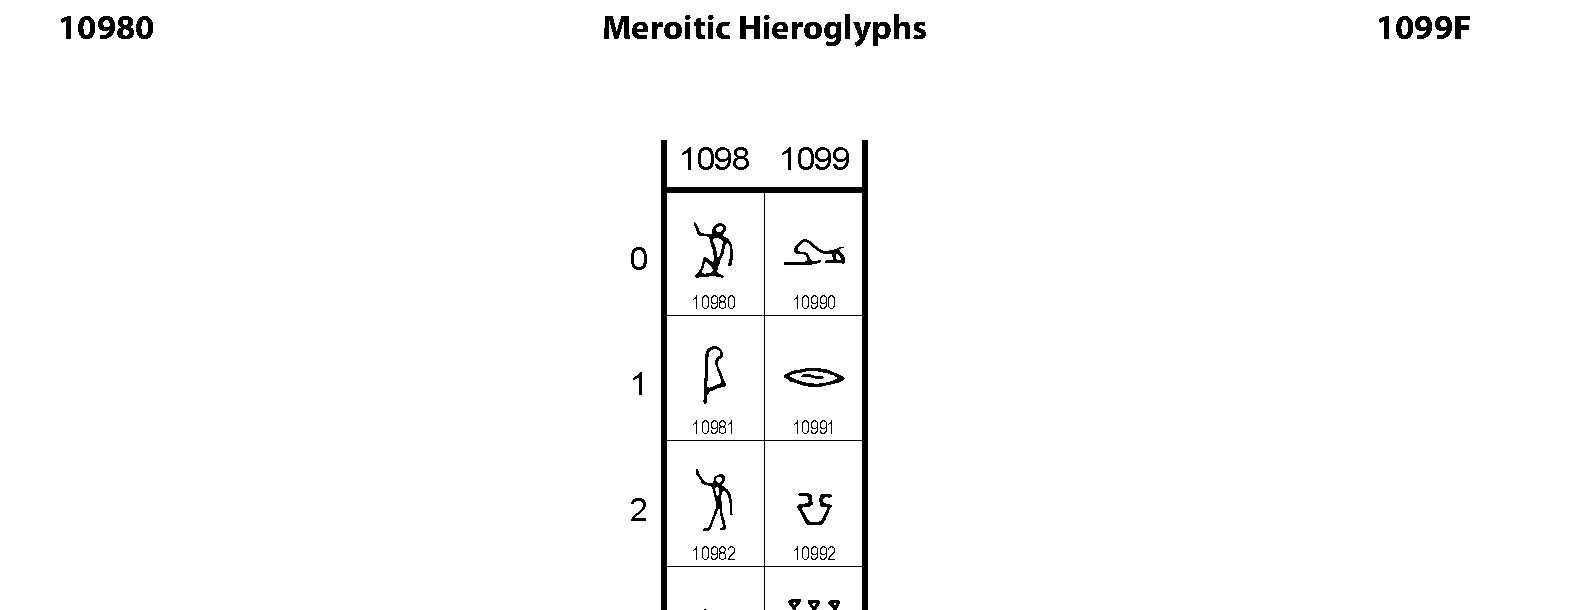 Unicode - Meroitic Hieroglyphs